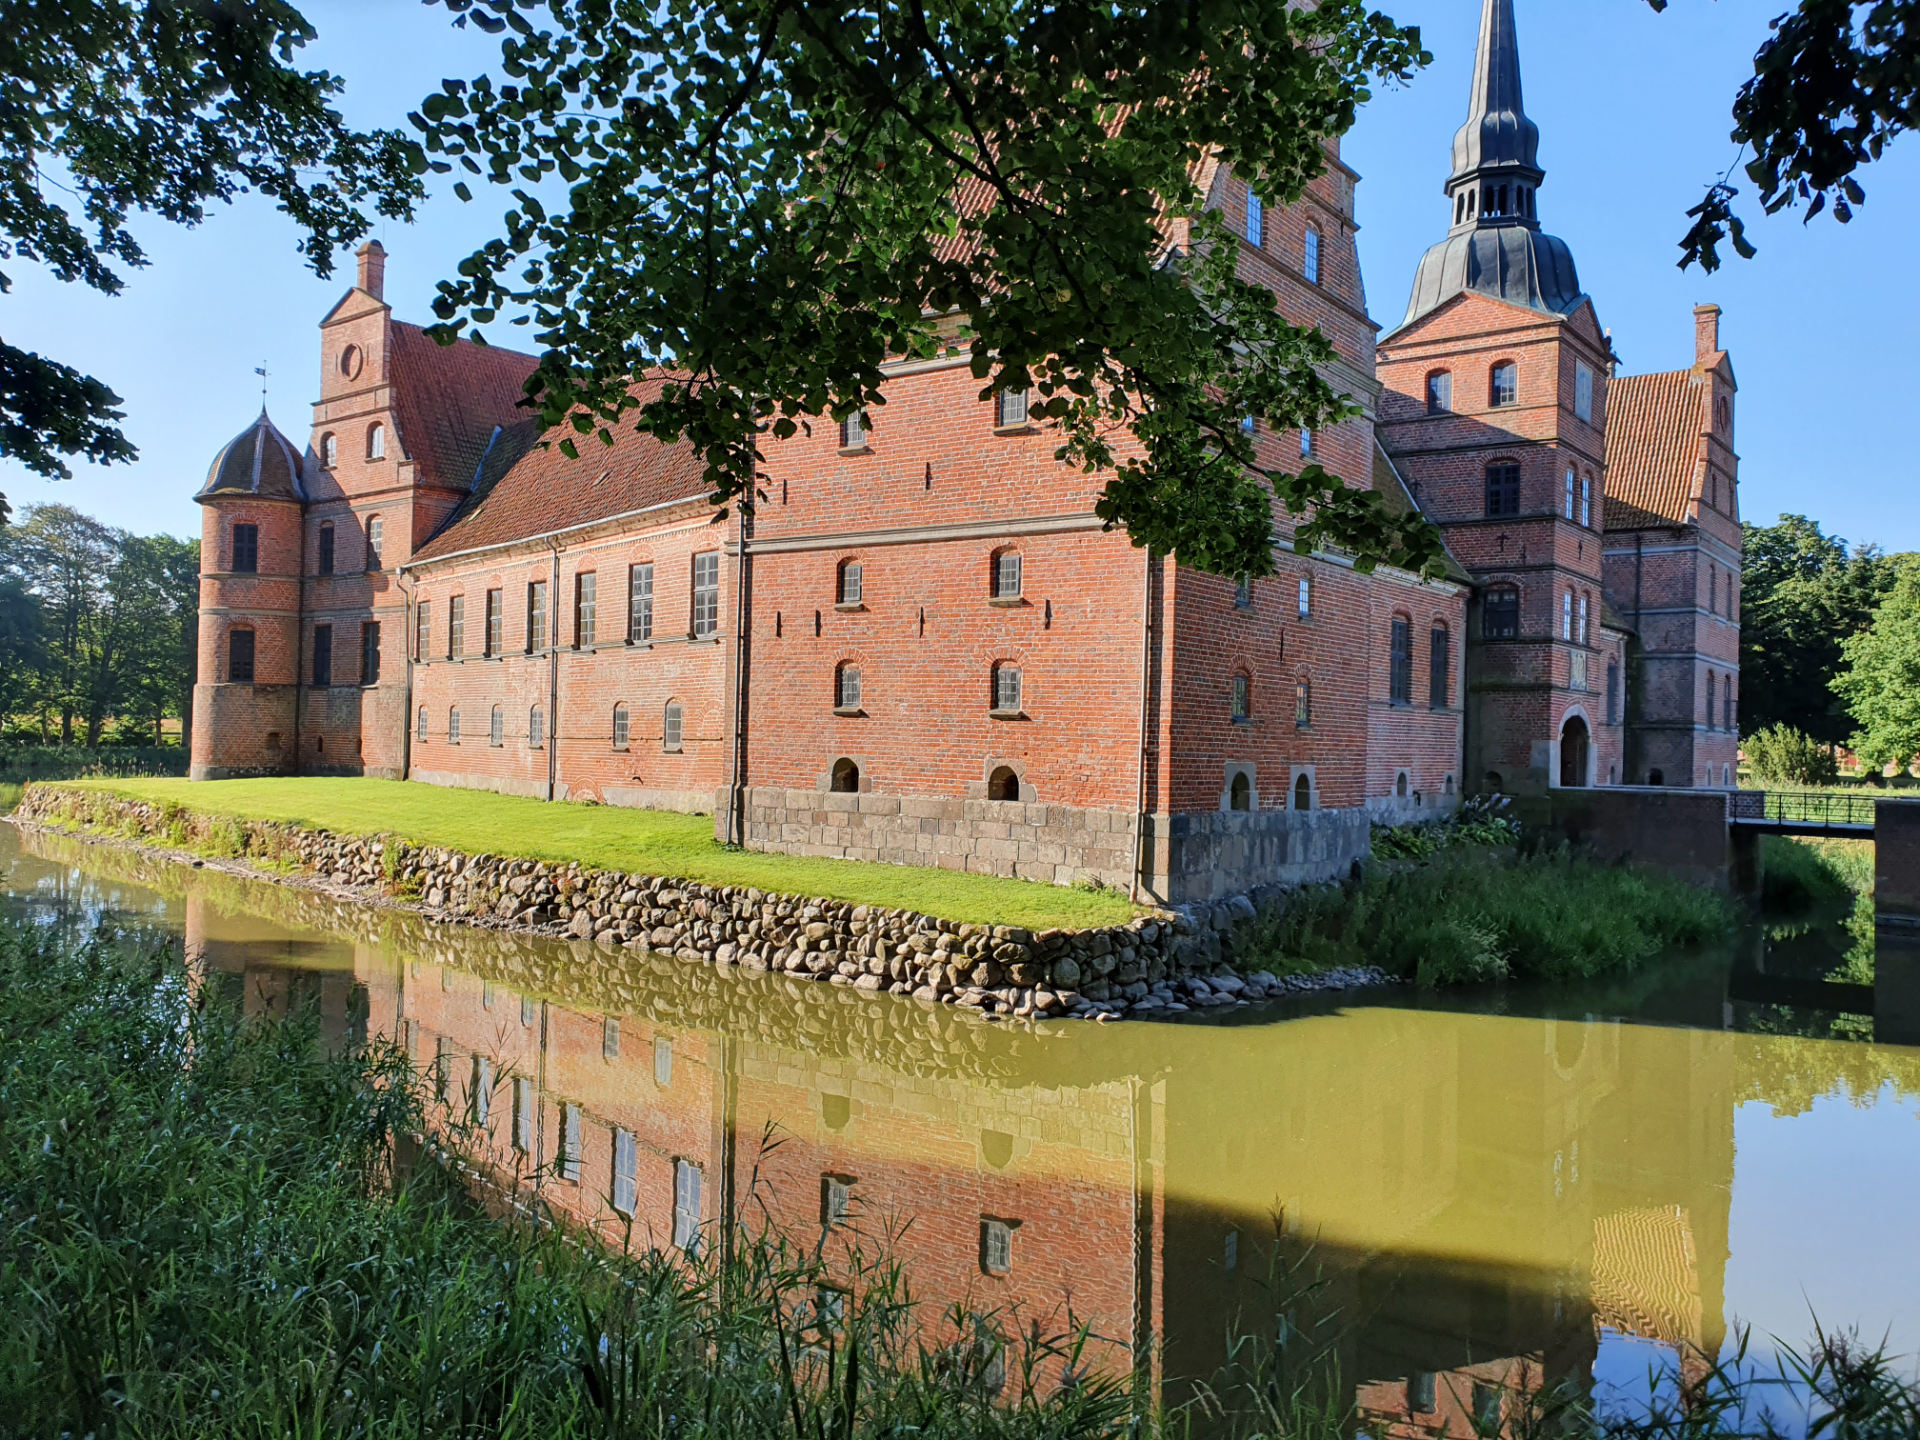 Image of Rosenholm Castle in Denmark